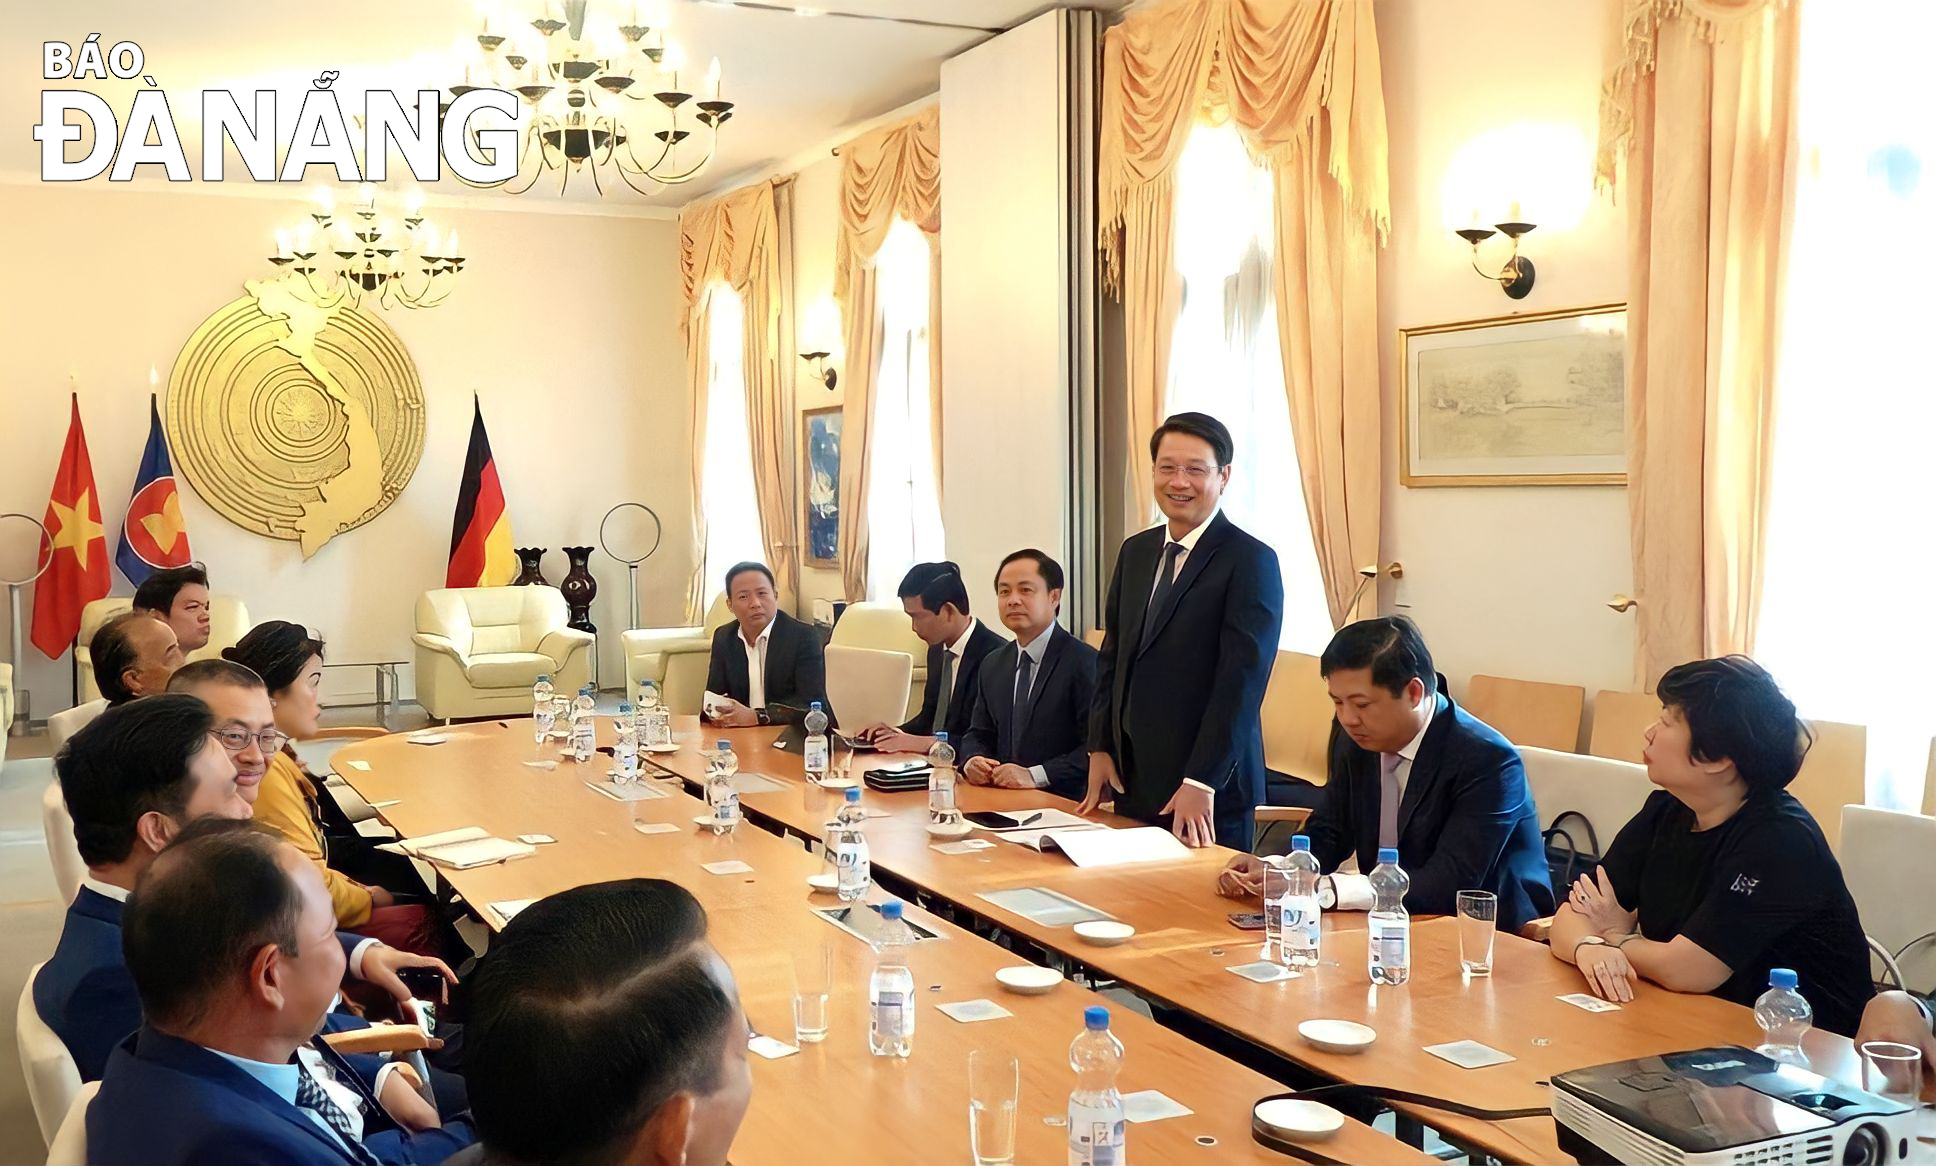  Chủ tịch Ủy ban MTTQ Việt Nam thành phố Ngô Xuân Thắng phát biểu tại buổi gặp mặt các doanh nhân, kiều bào tại Berlin, Đức. Ảnh: PV